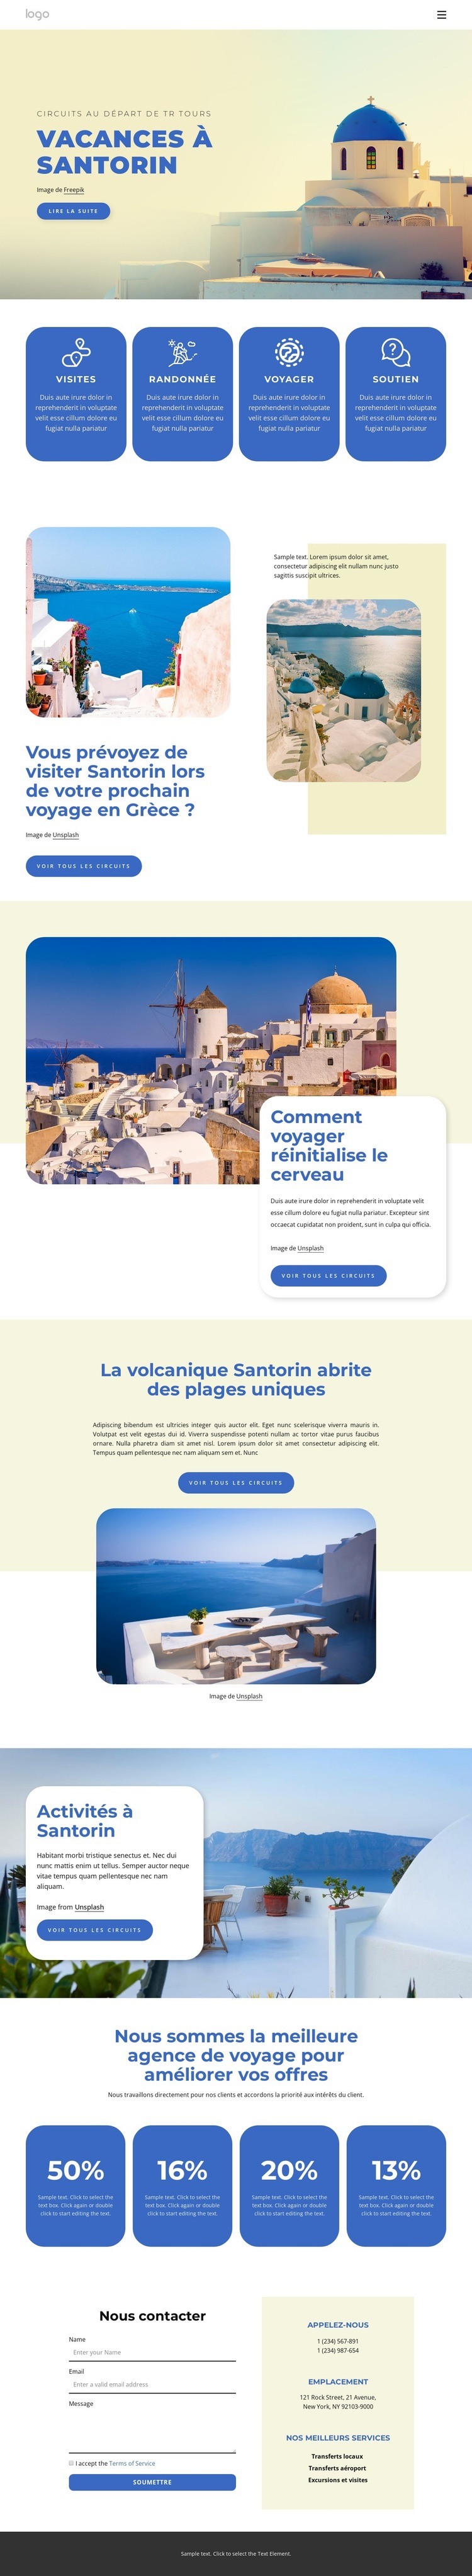 Vacances à Santorin Page de destination